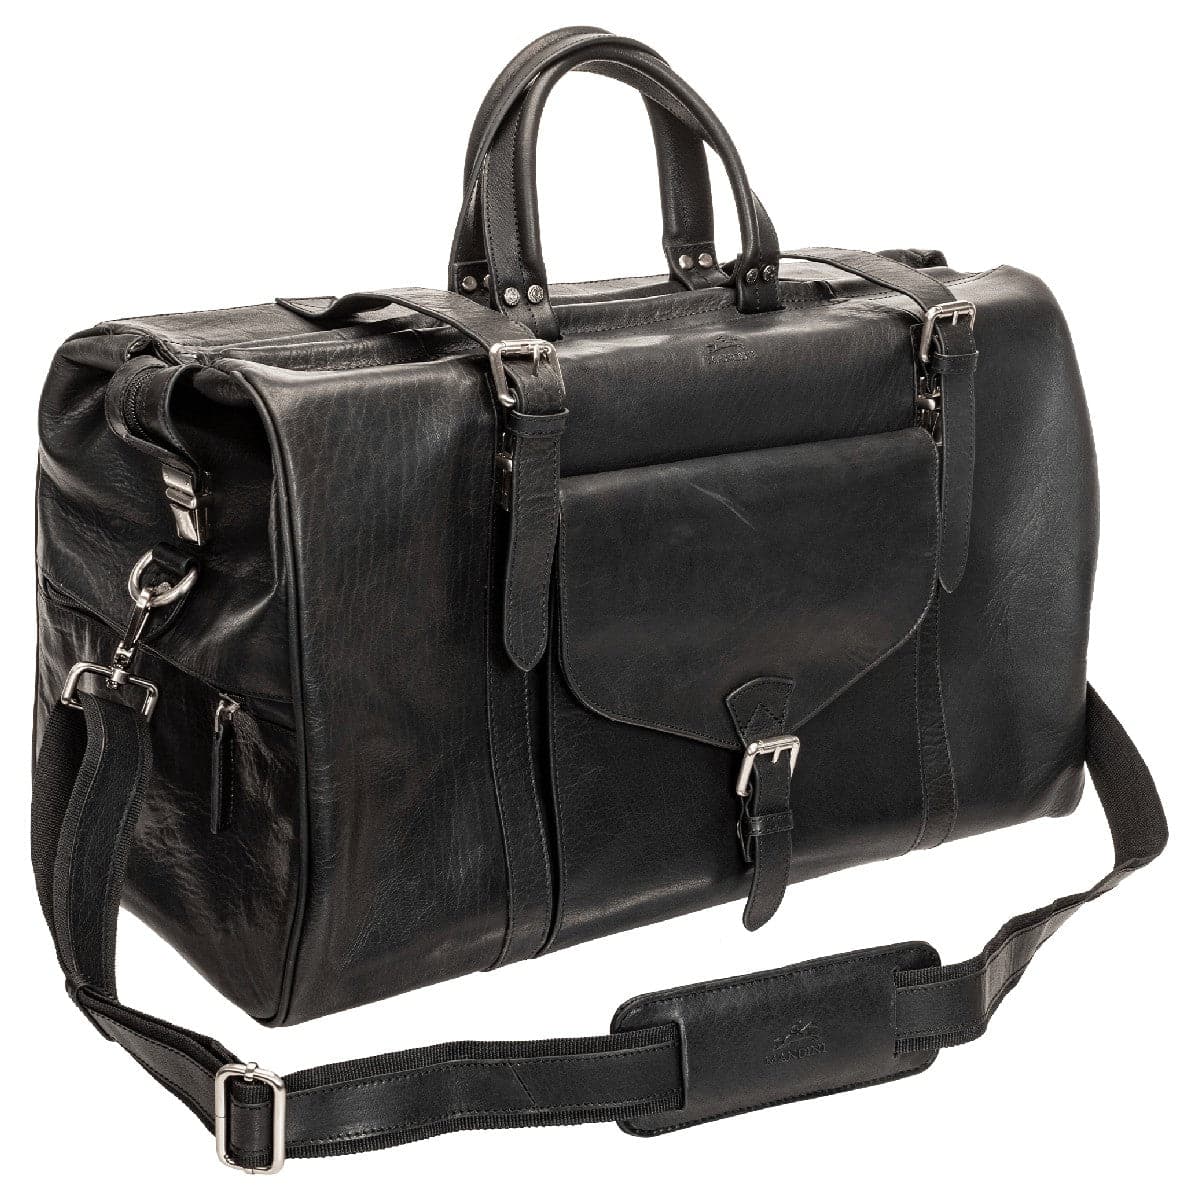 Mancini Buffalo Dowel Rod Carry-on Duffle Bag